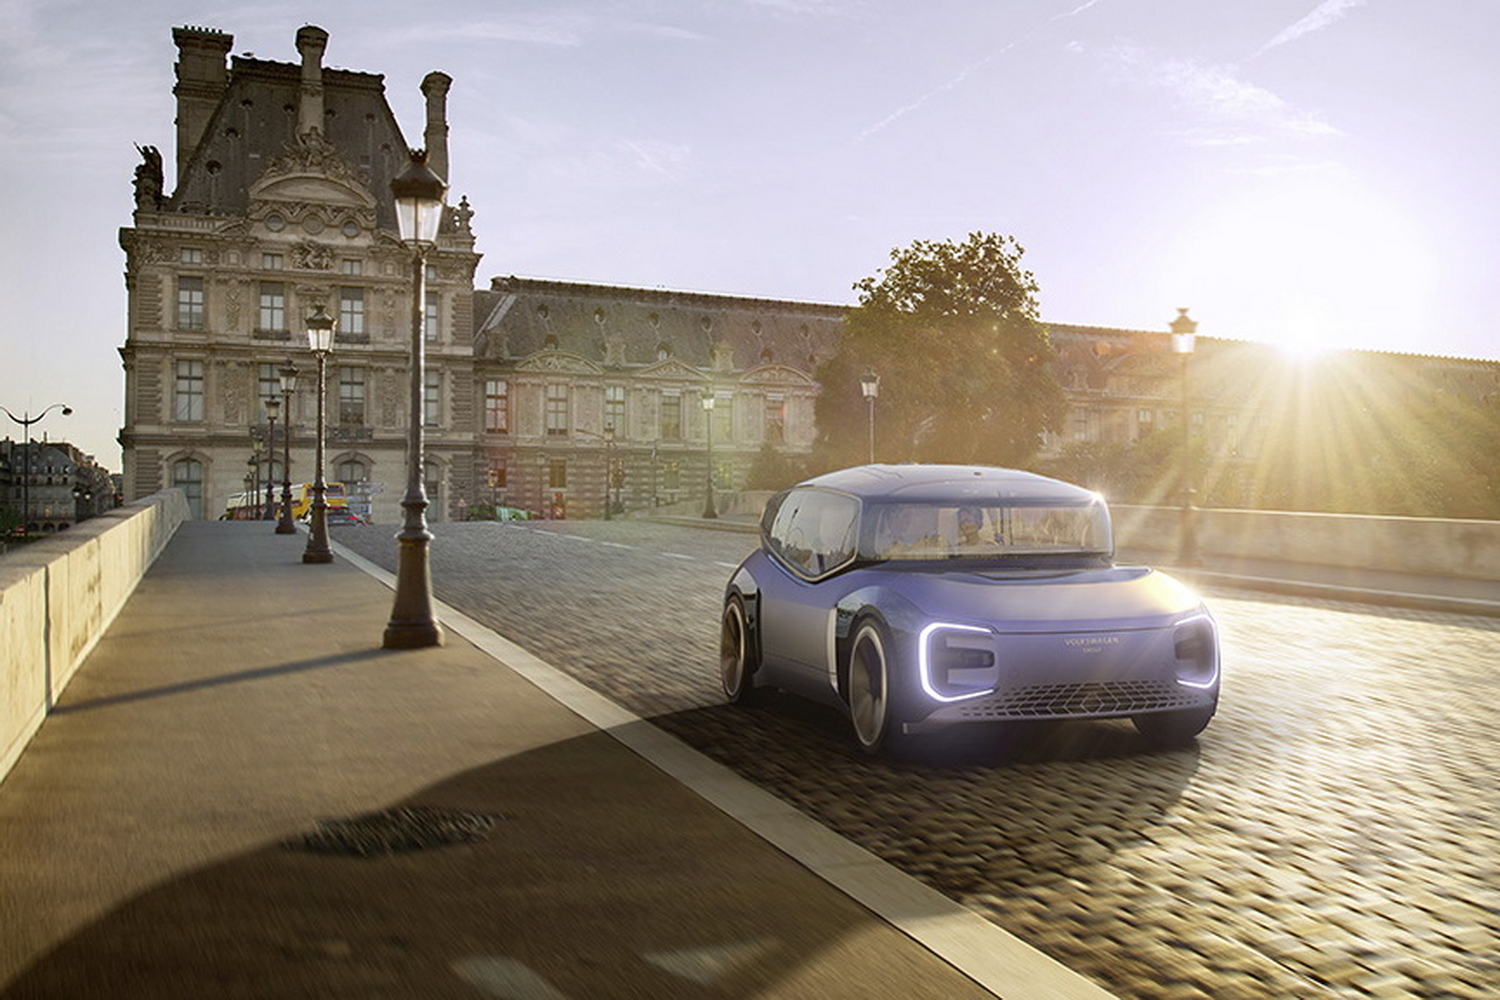 Volkswagen shows driverless future